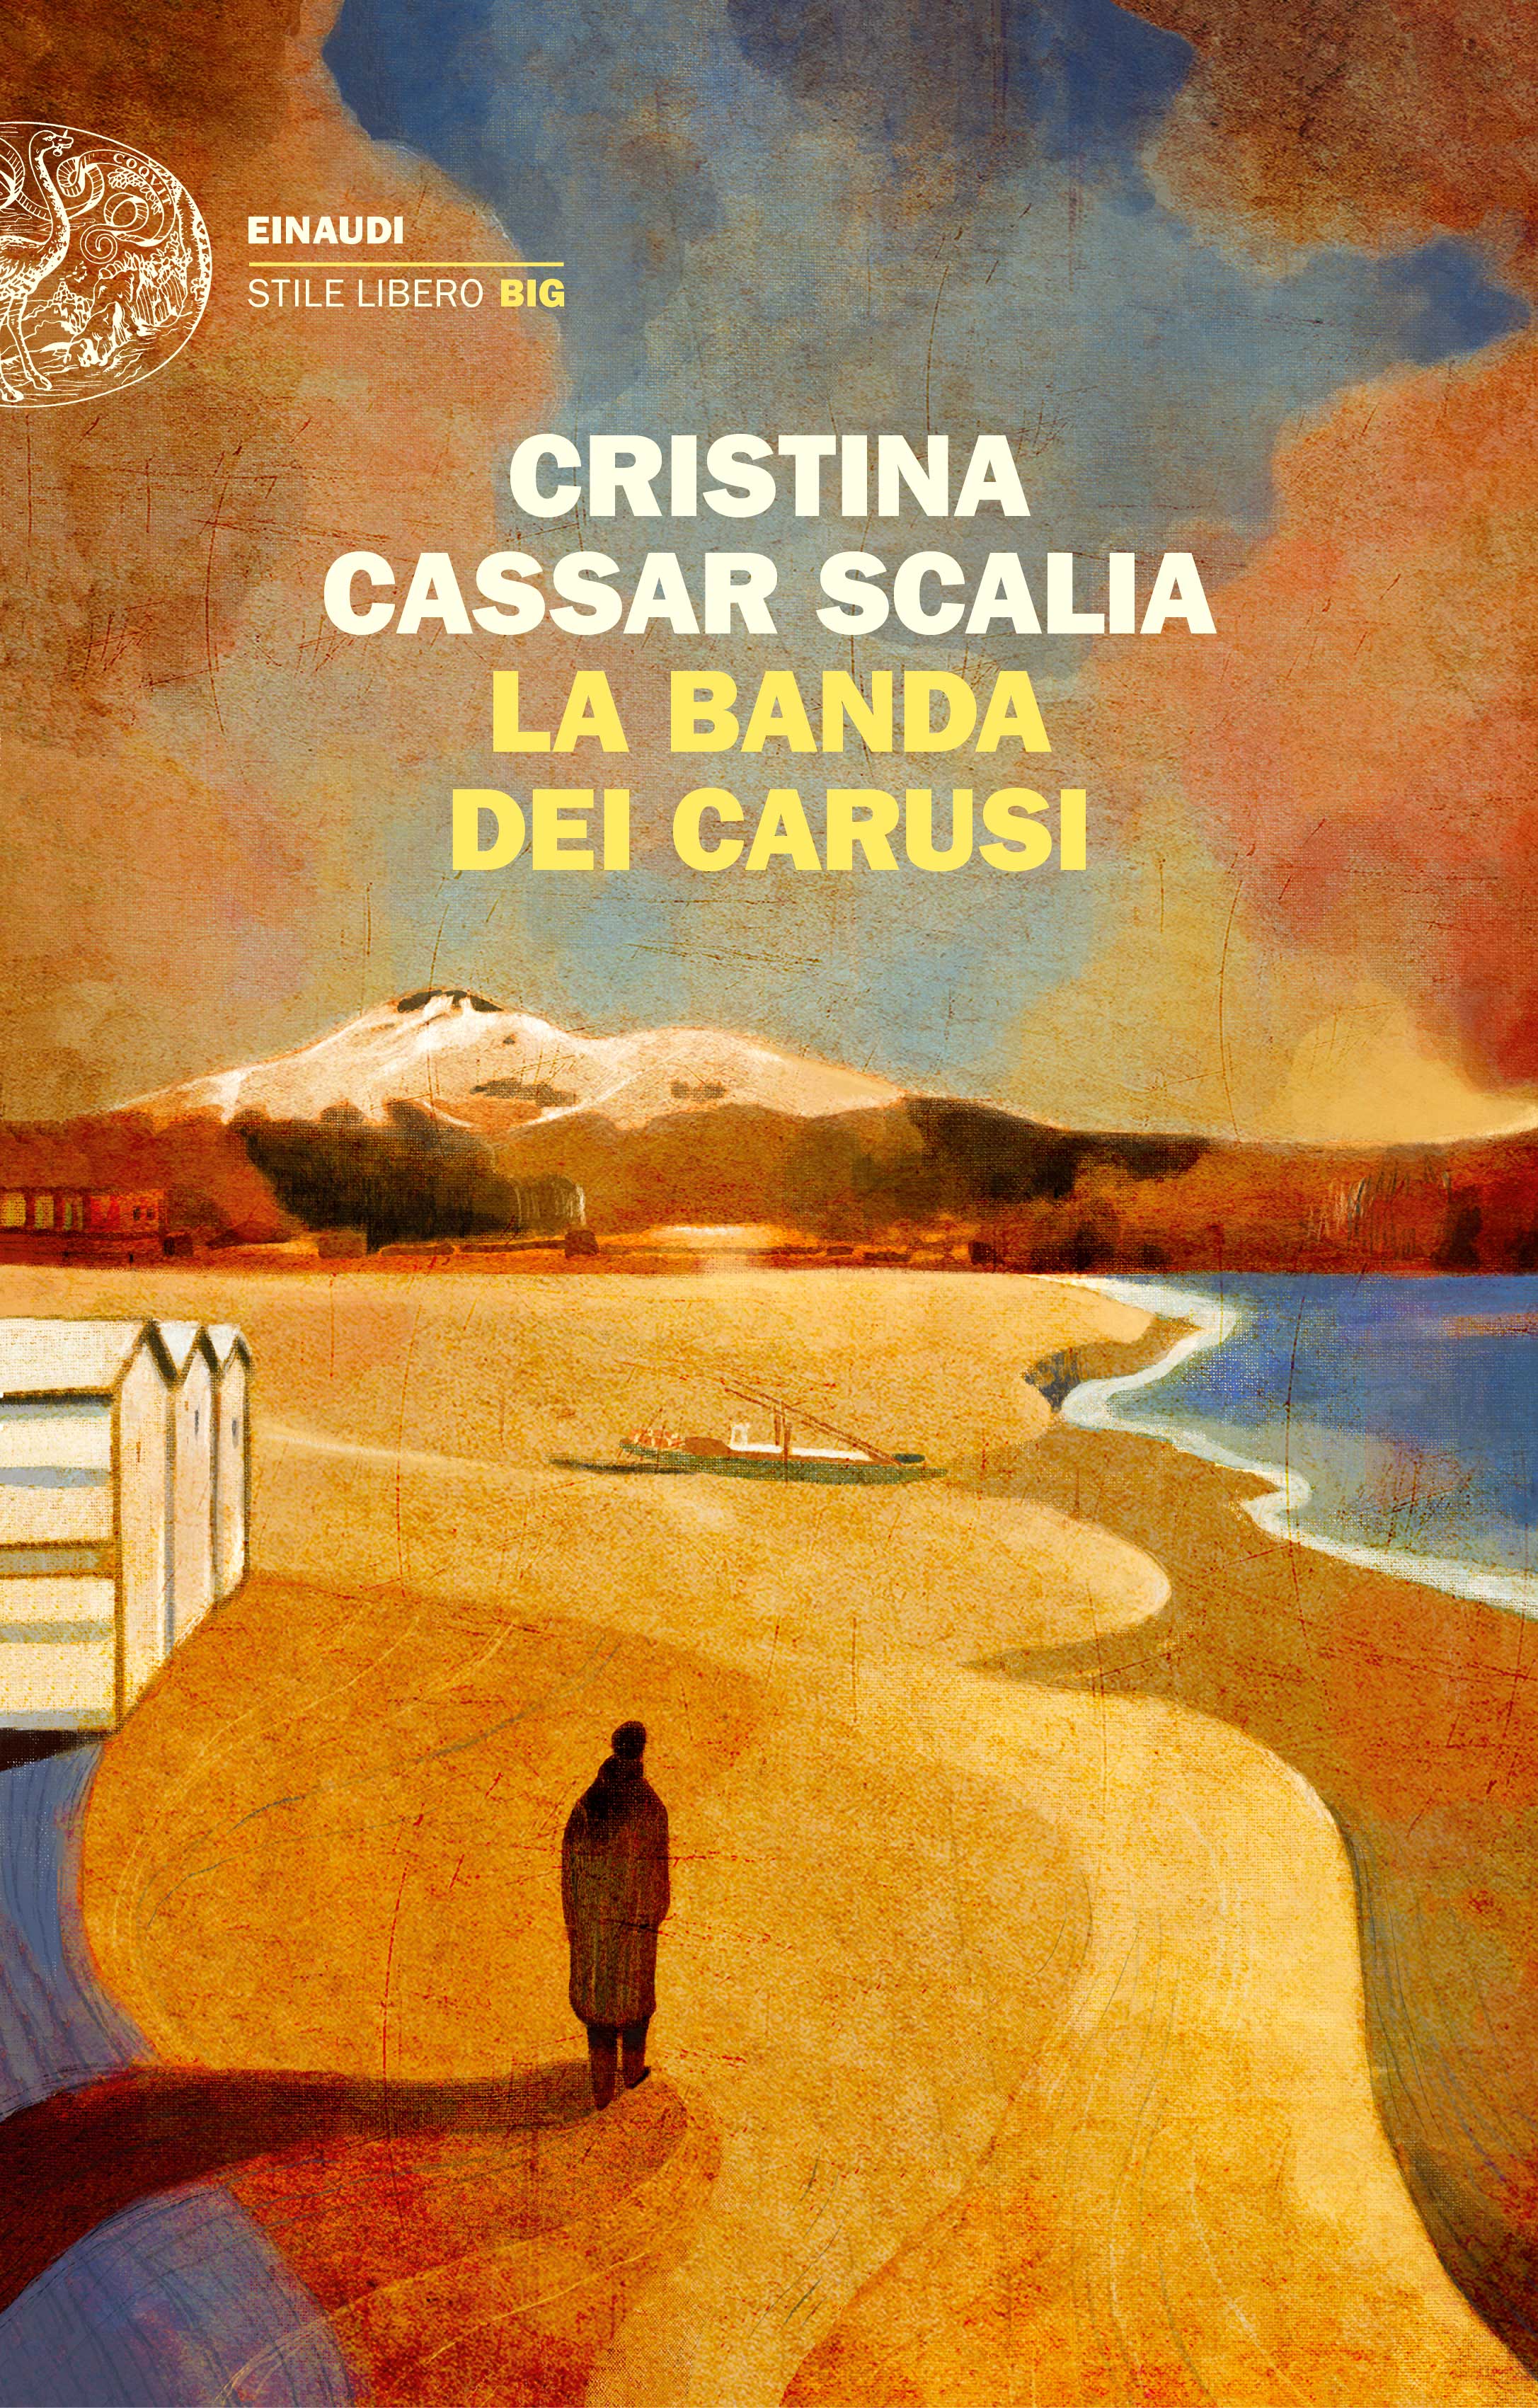 La banda dei carusi, Cristina Cassar Scalia. Giulio Einaudi